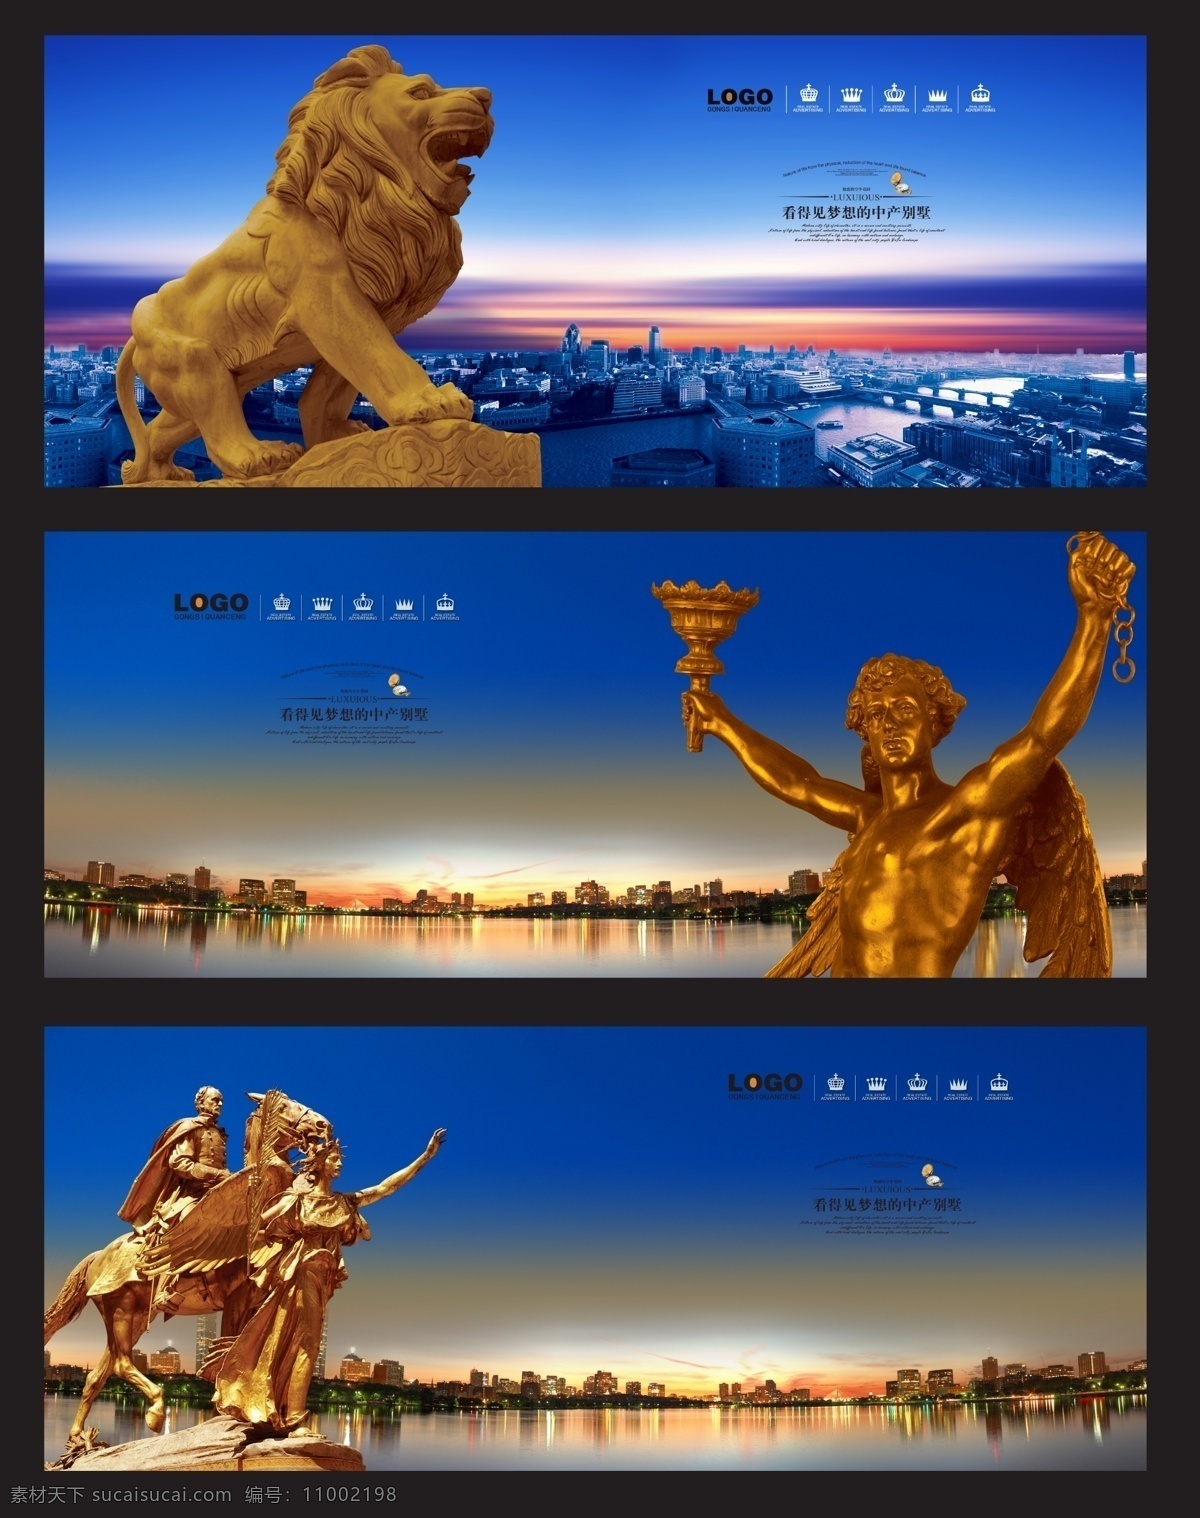 房地产广告 雕塑 人物 雄狮 天使 城市夜景 水面 房地产